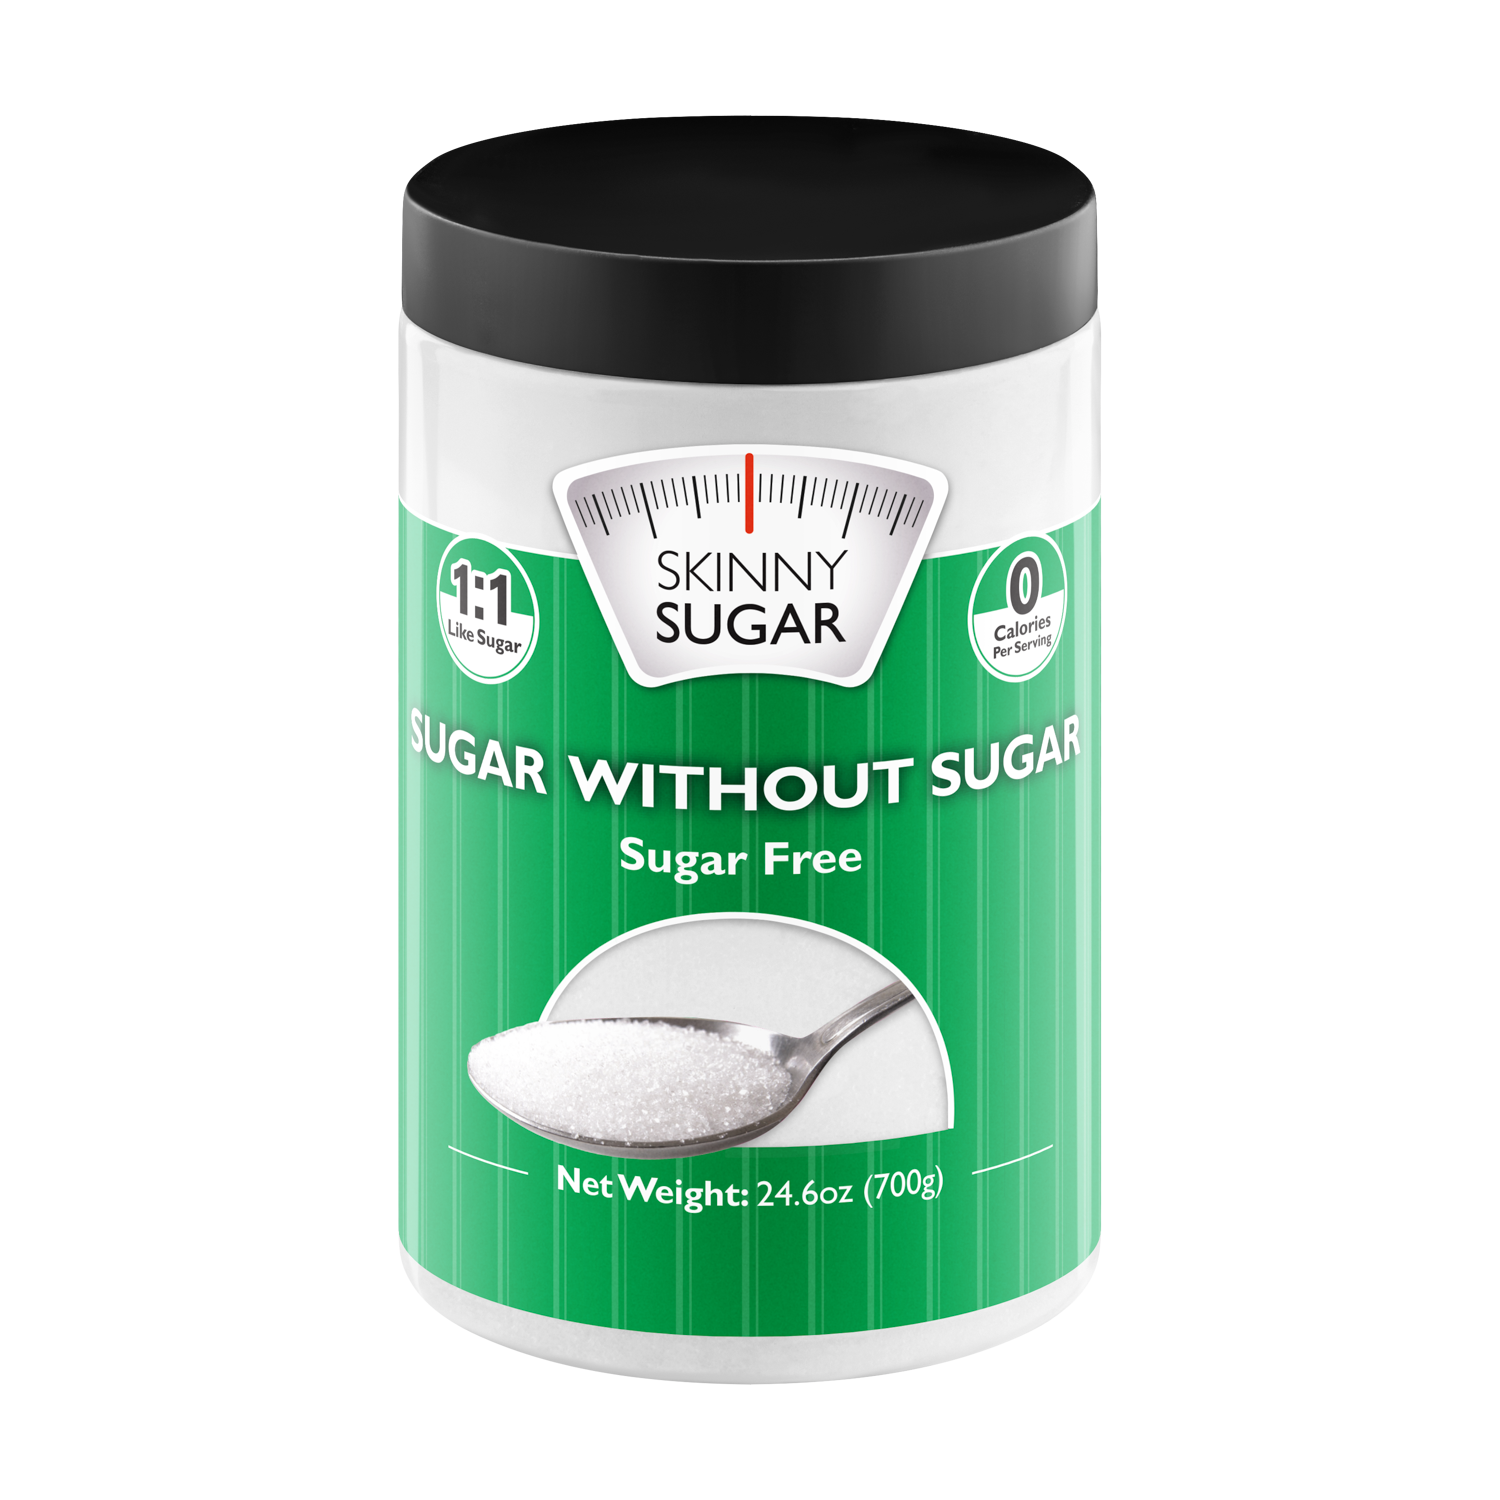 Skinny Sugar - Sugar Without Sugar